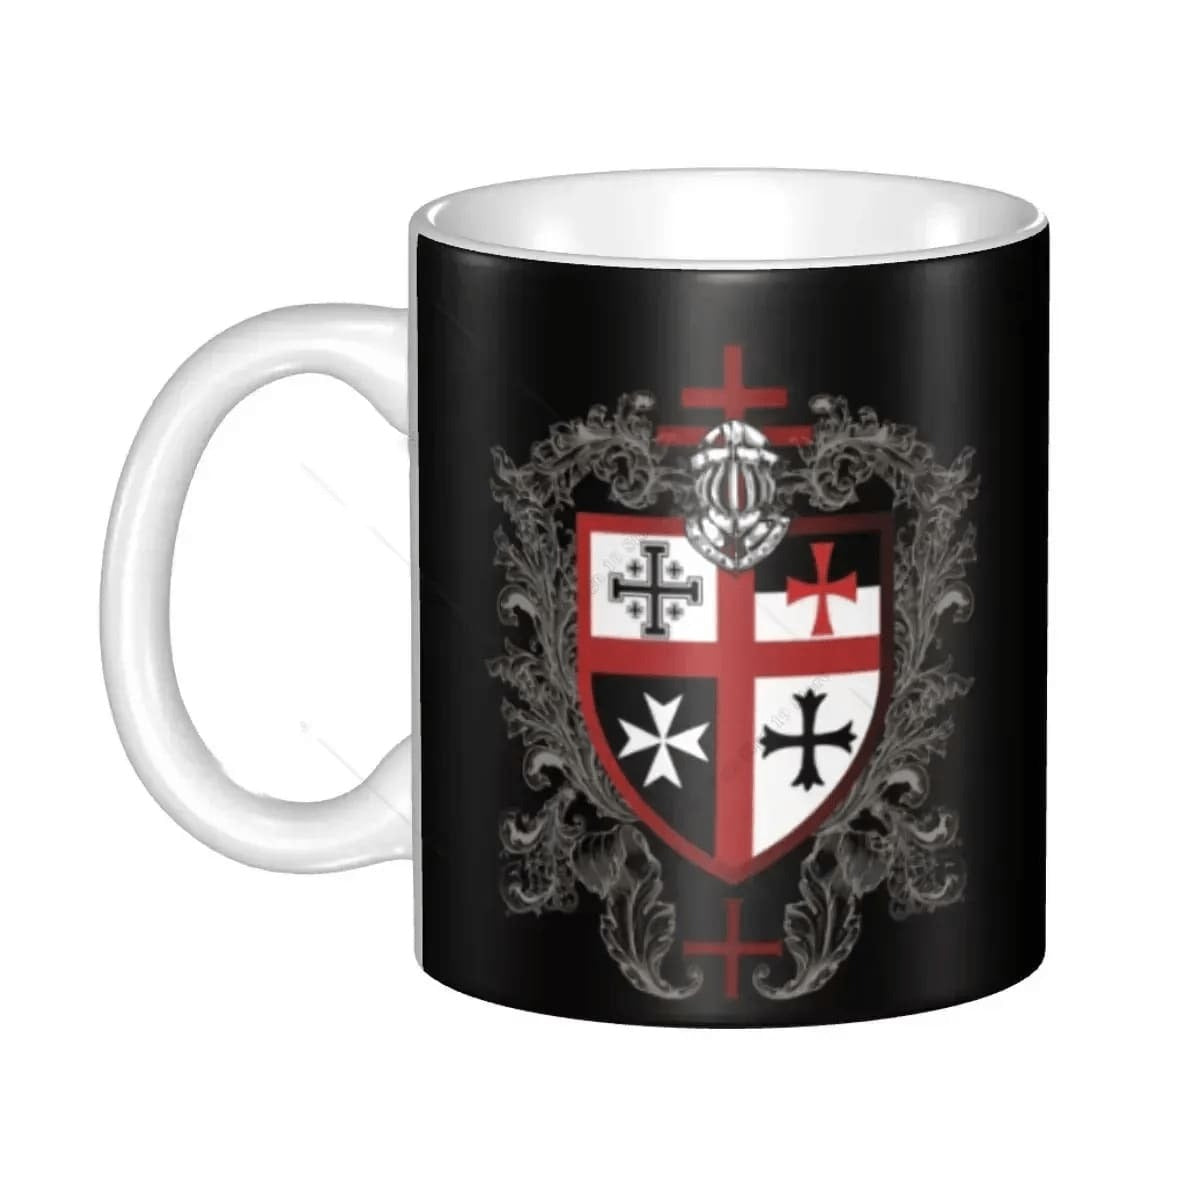 Knights Templar Commandery Mug - Shield & Cross Design - Bricks Masons